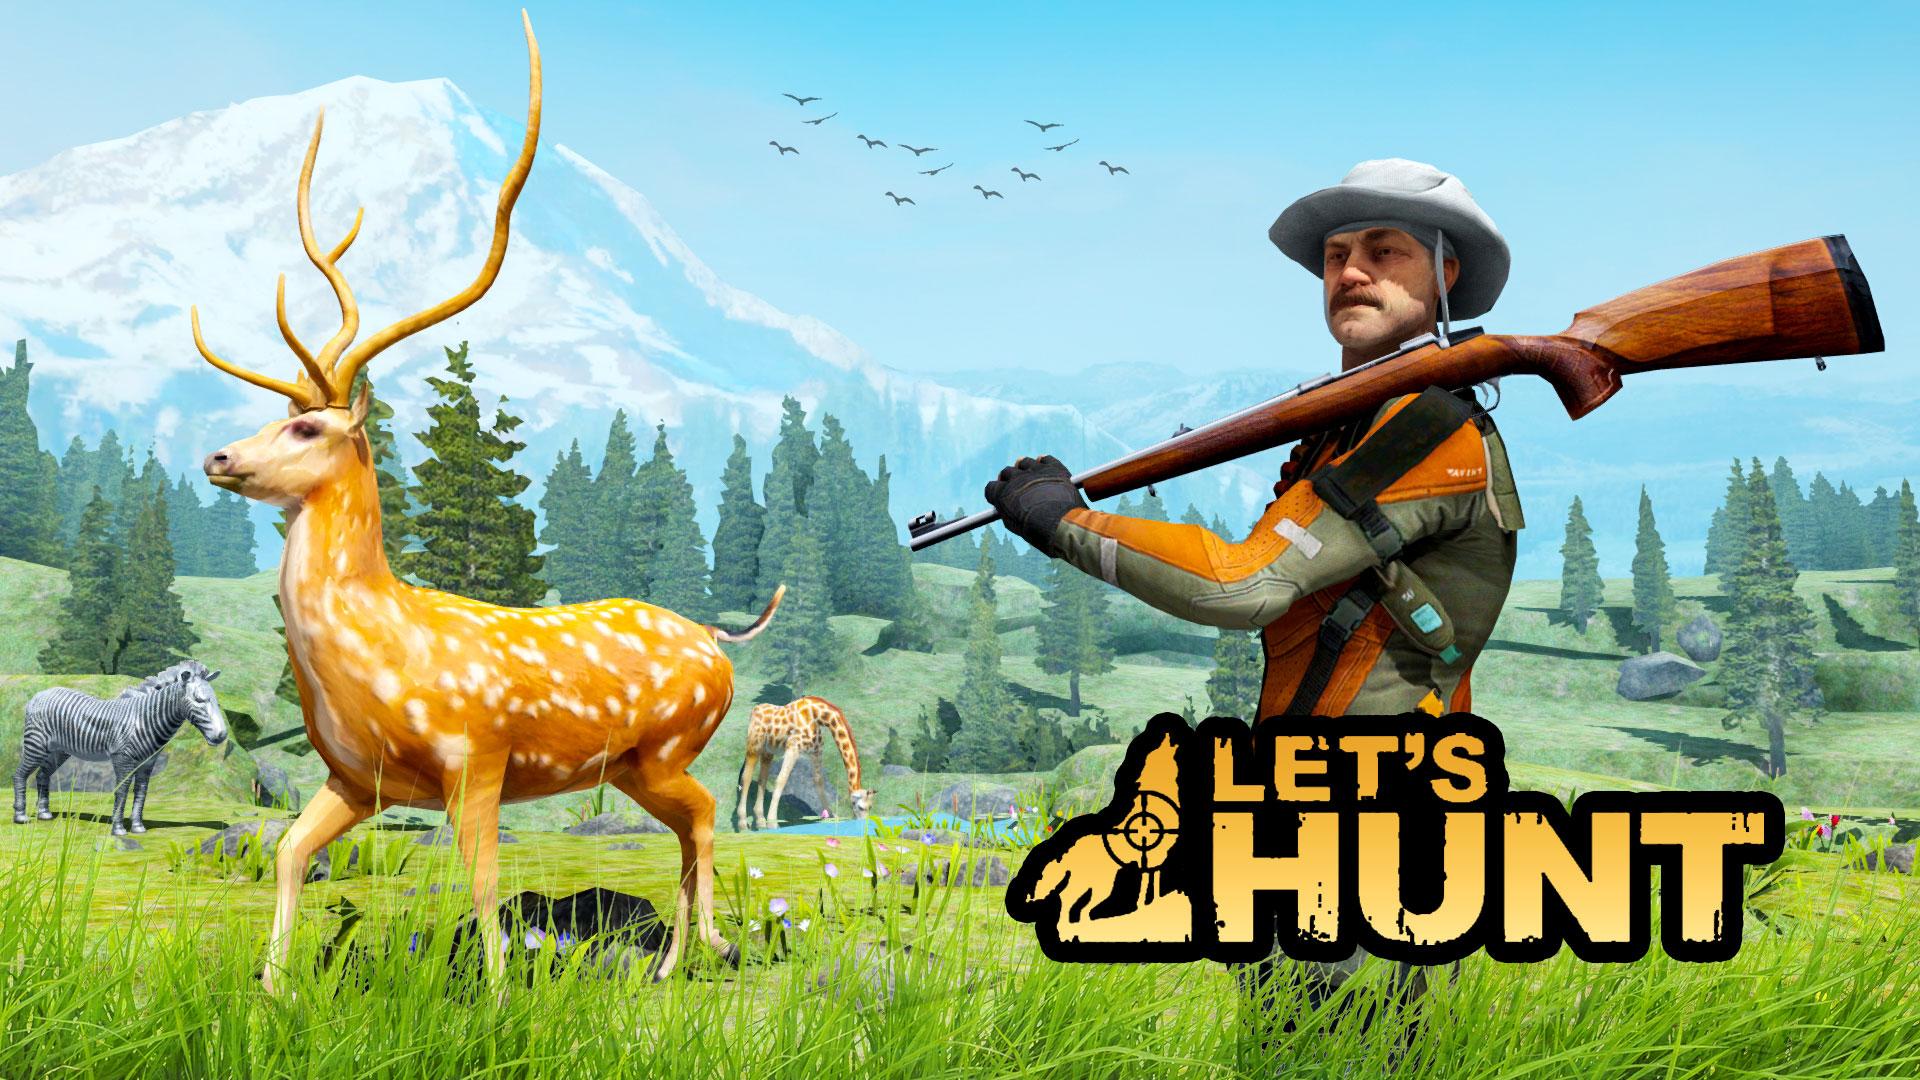 Охота на зверей 2. Игра охота. Hunter 2022 игра. Игра про охоту на животных на ПК. Охотничьи игры - Hunting games (2023).